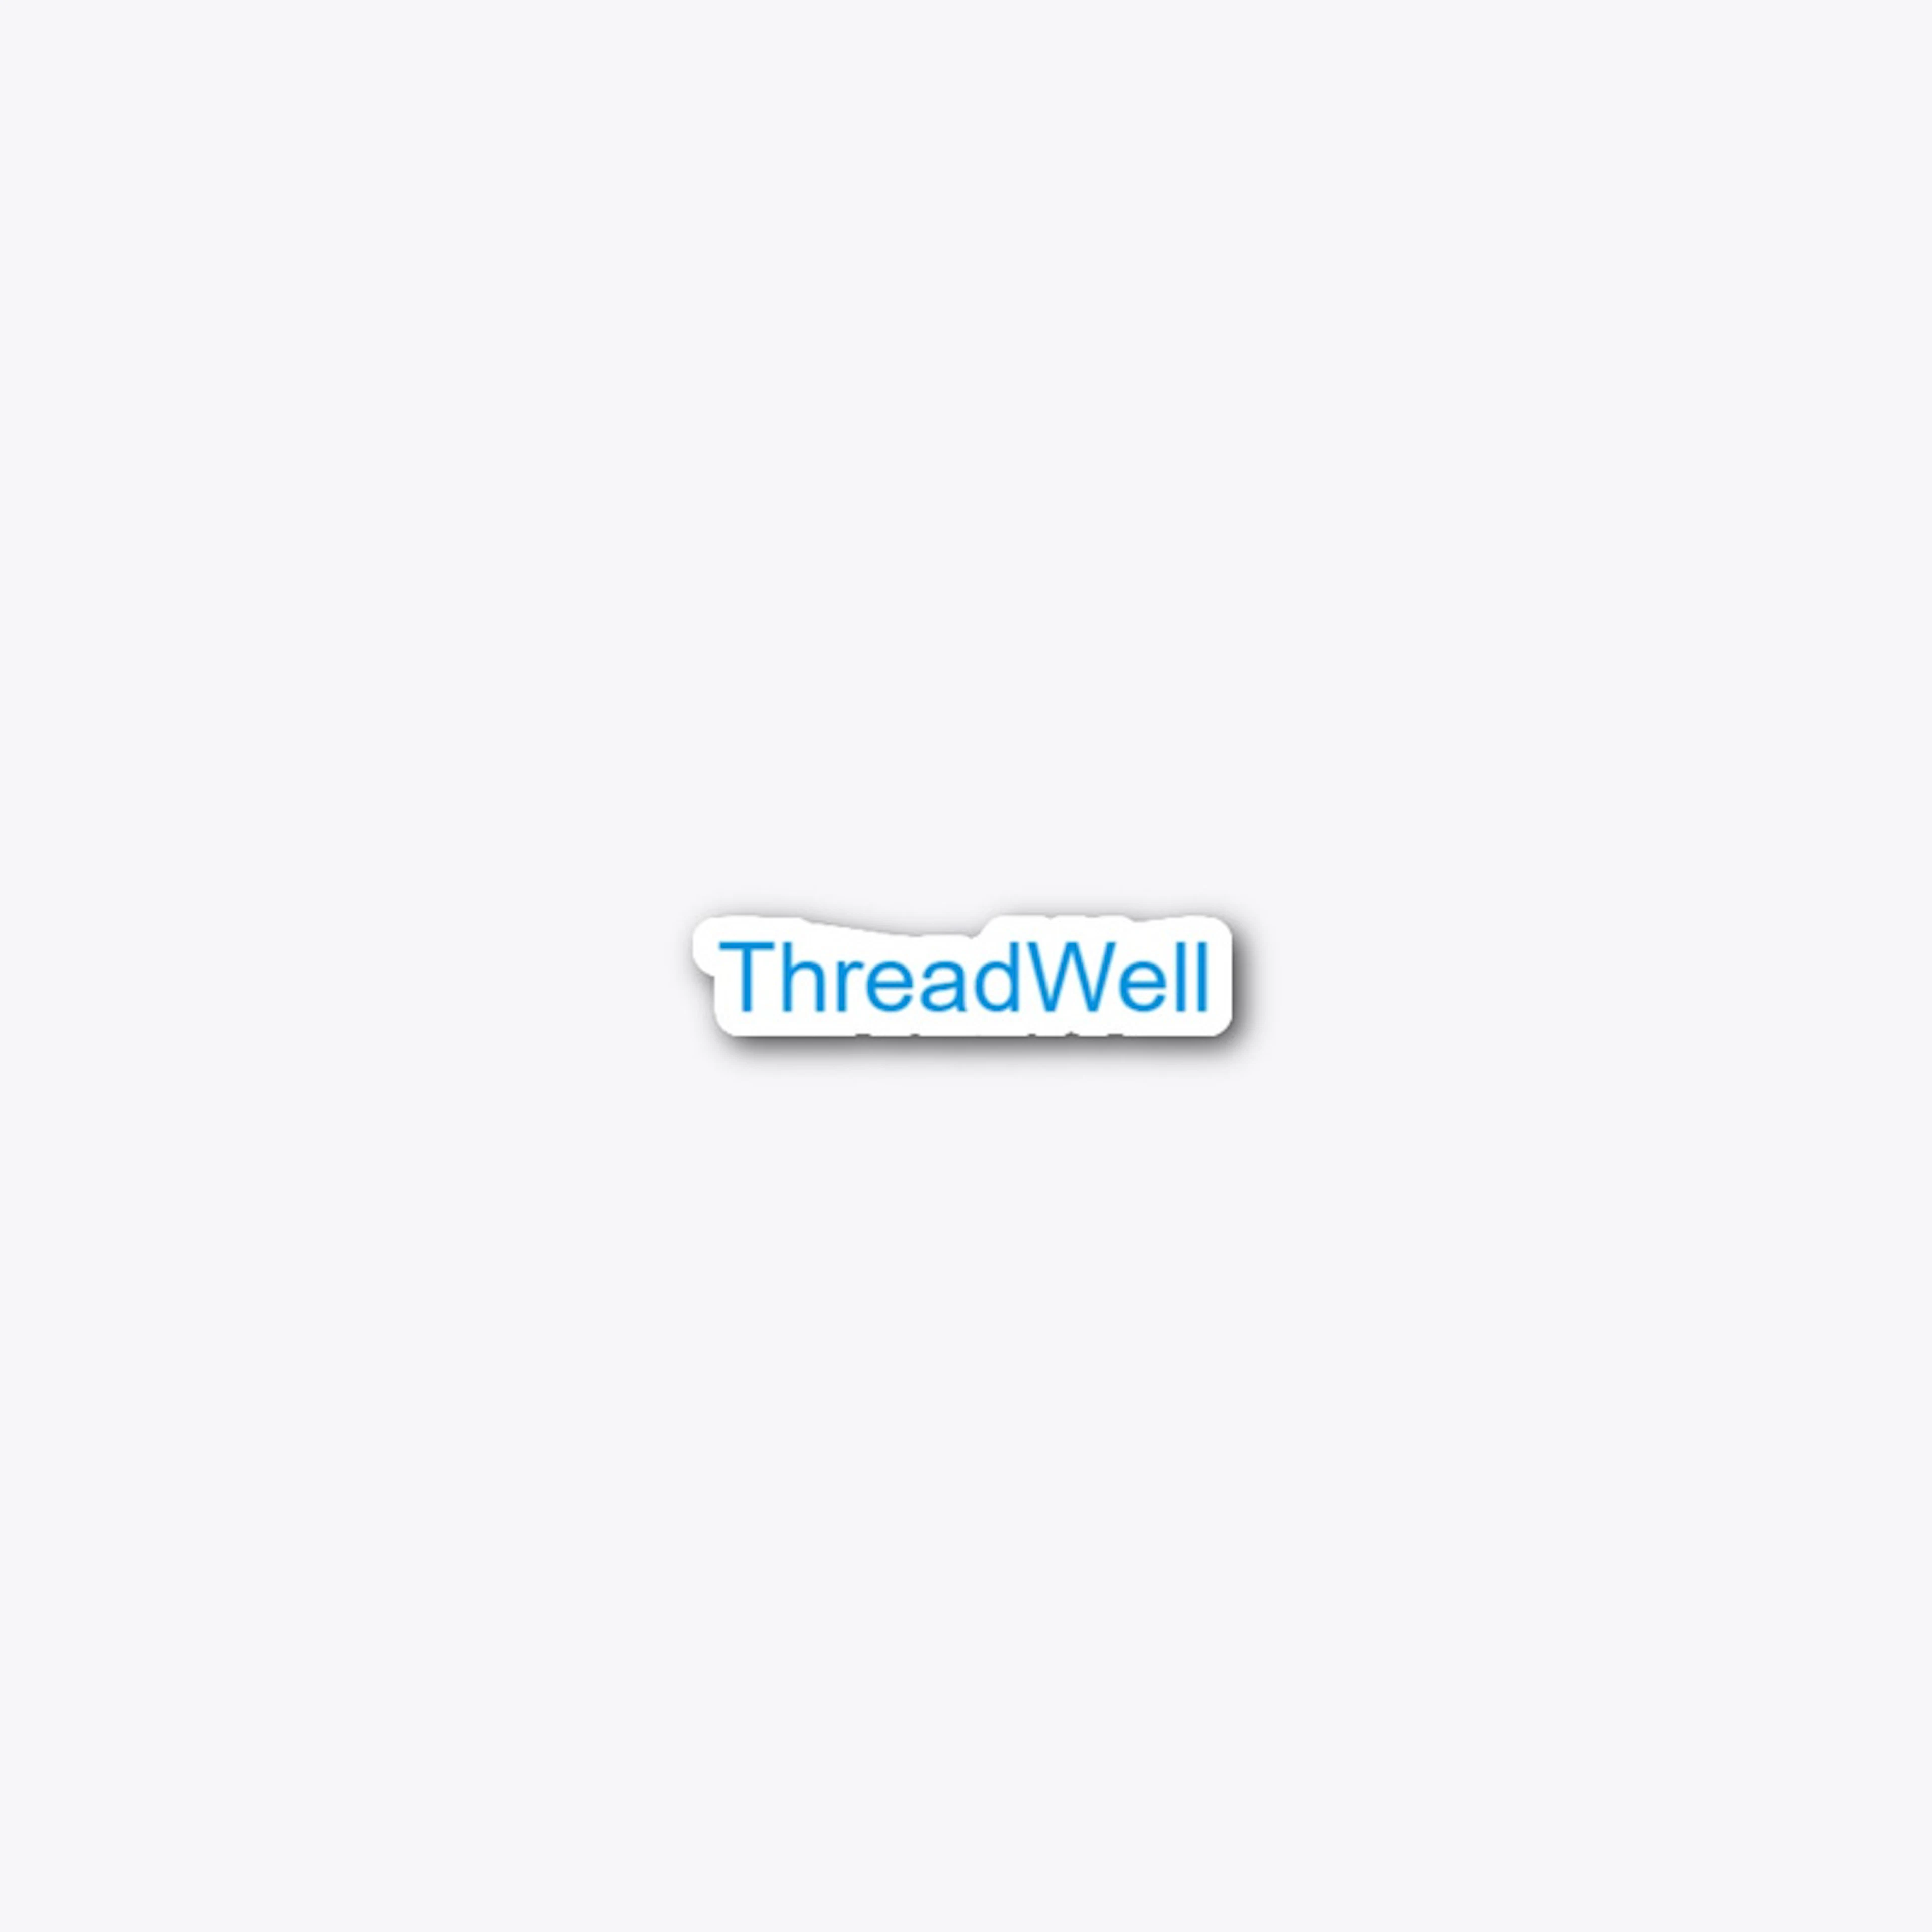 ThreadWell